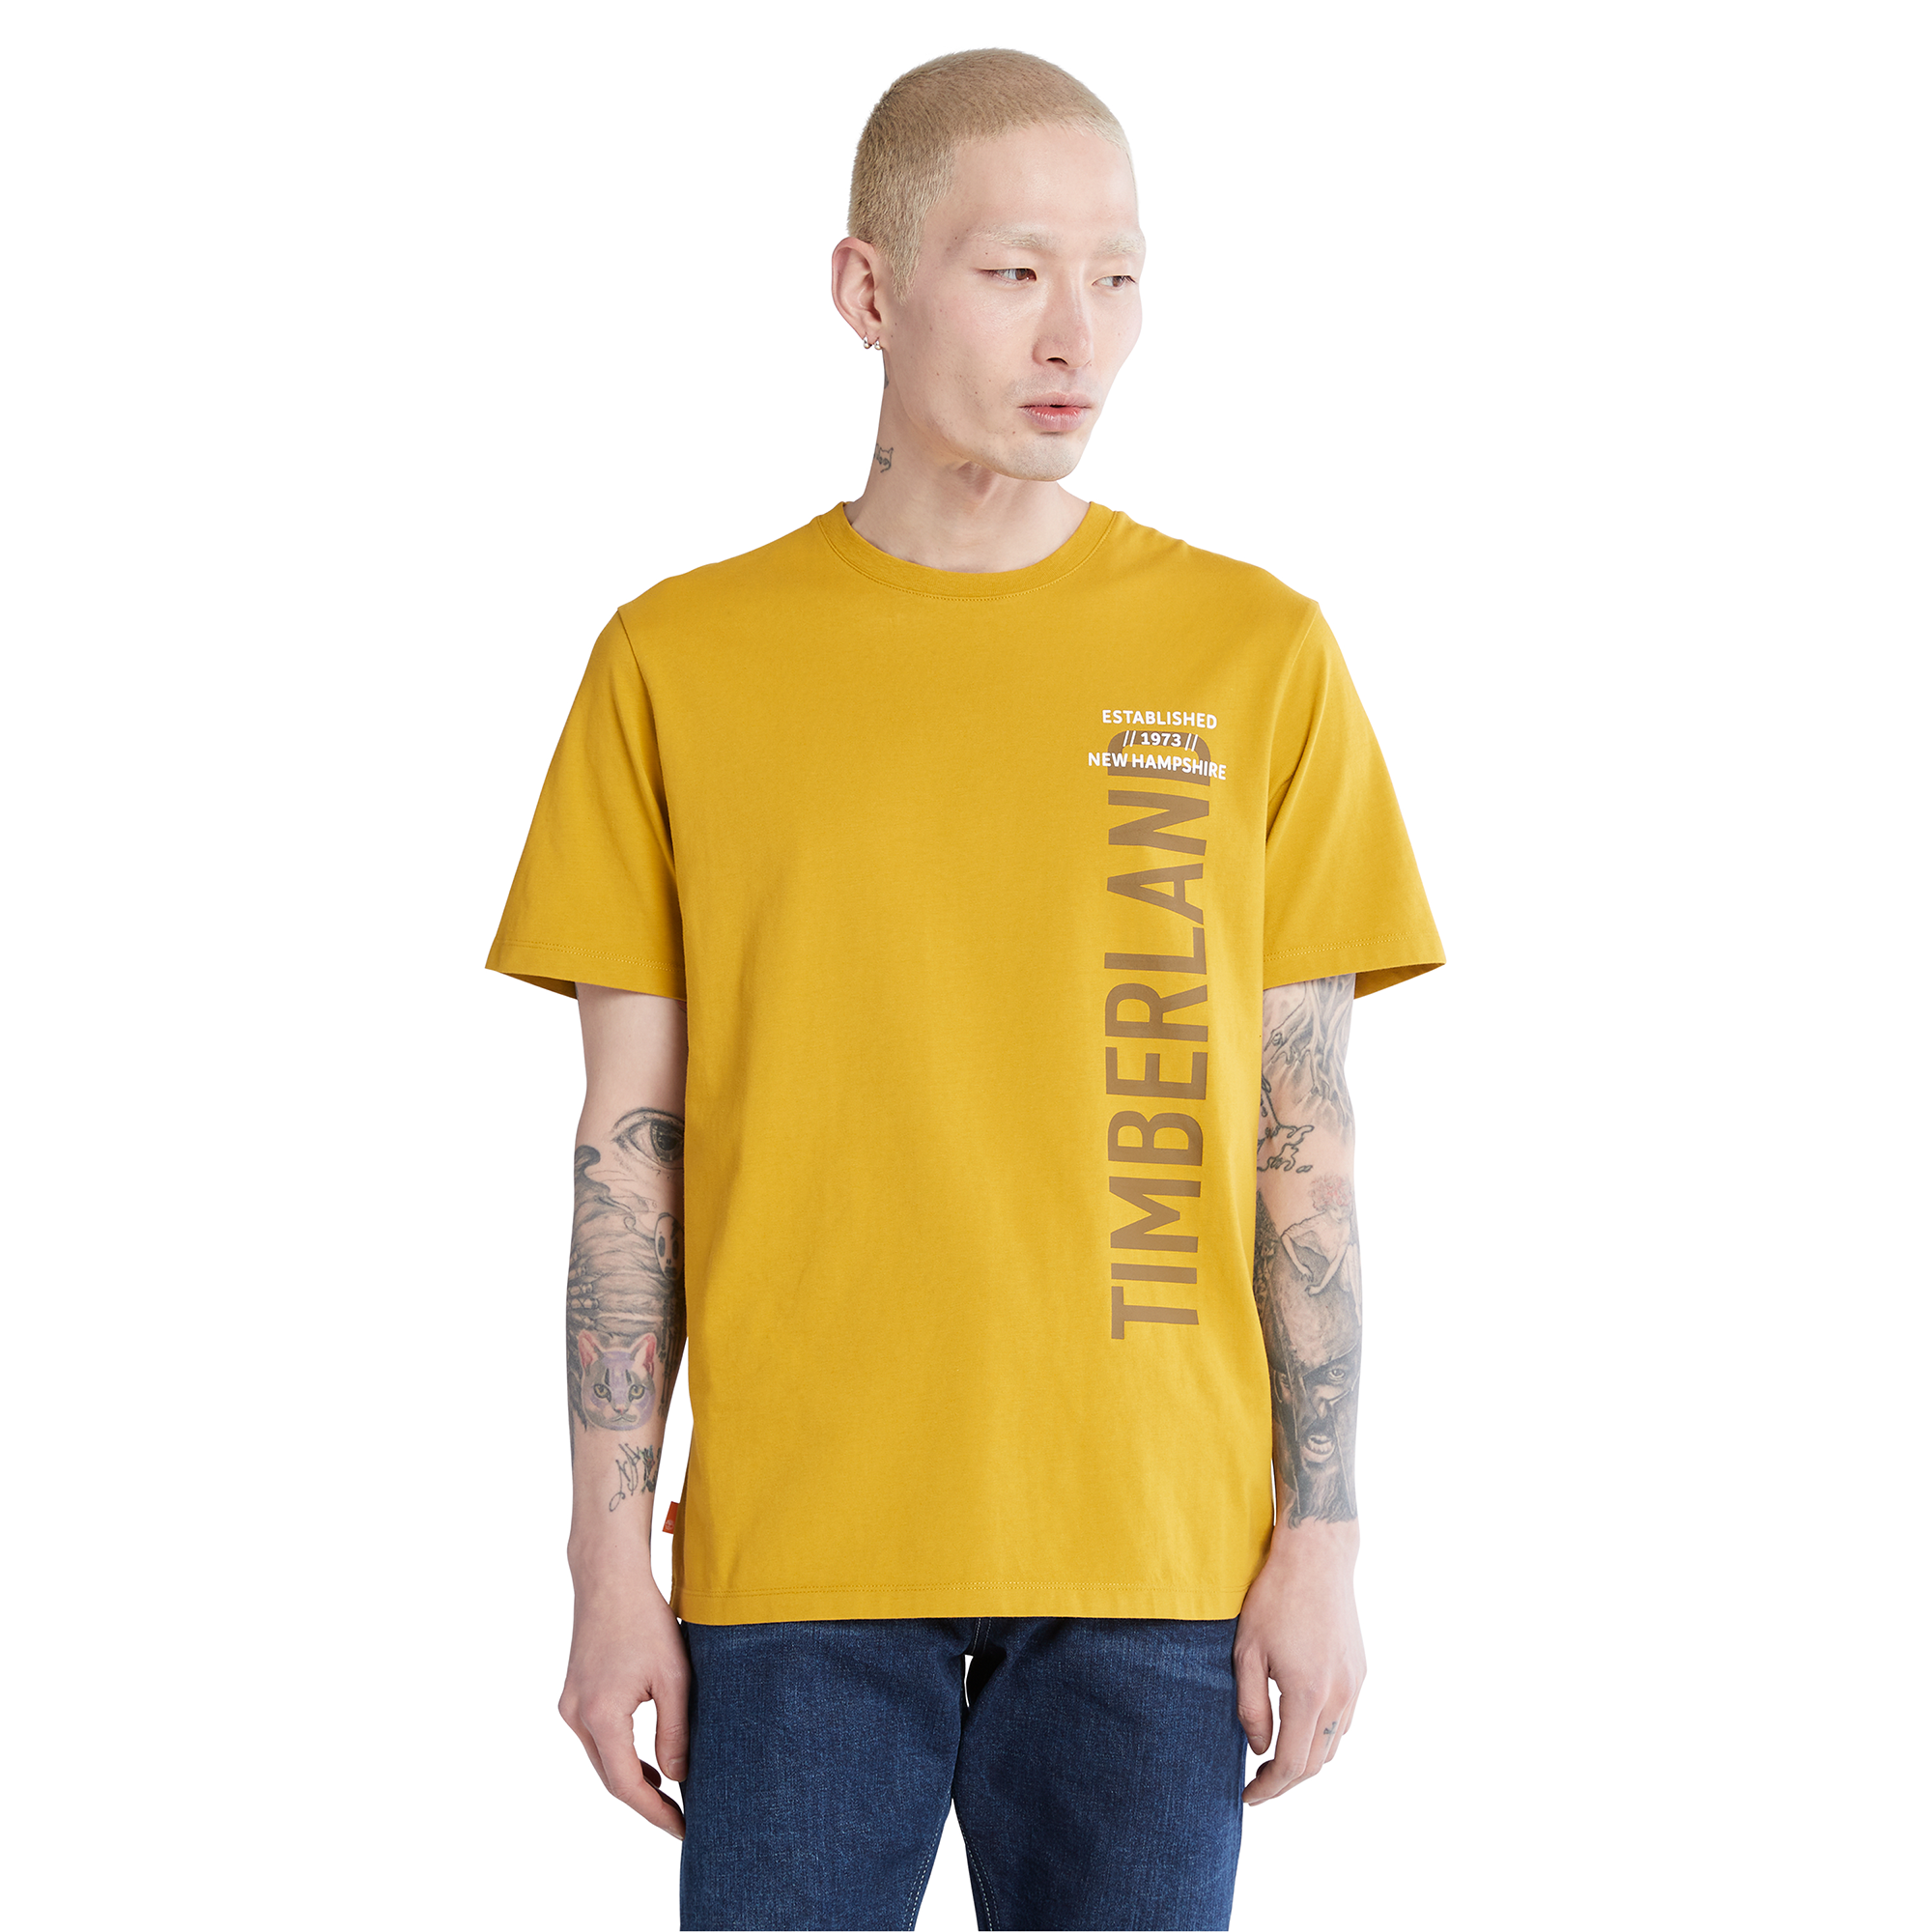 Timberland Brand Carrier T-Shirt - Men's